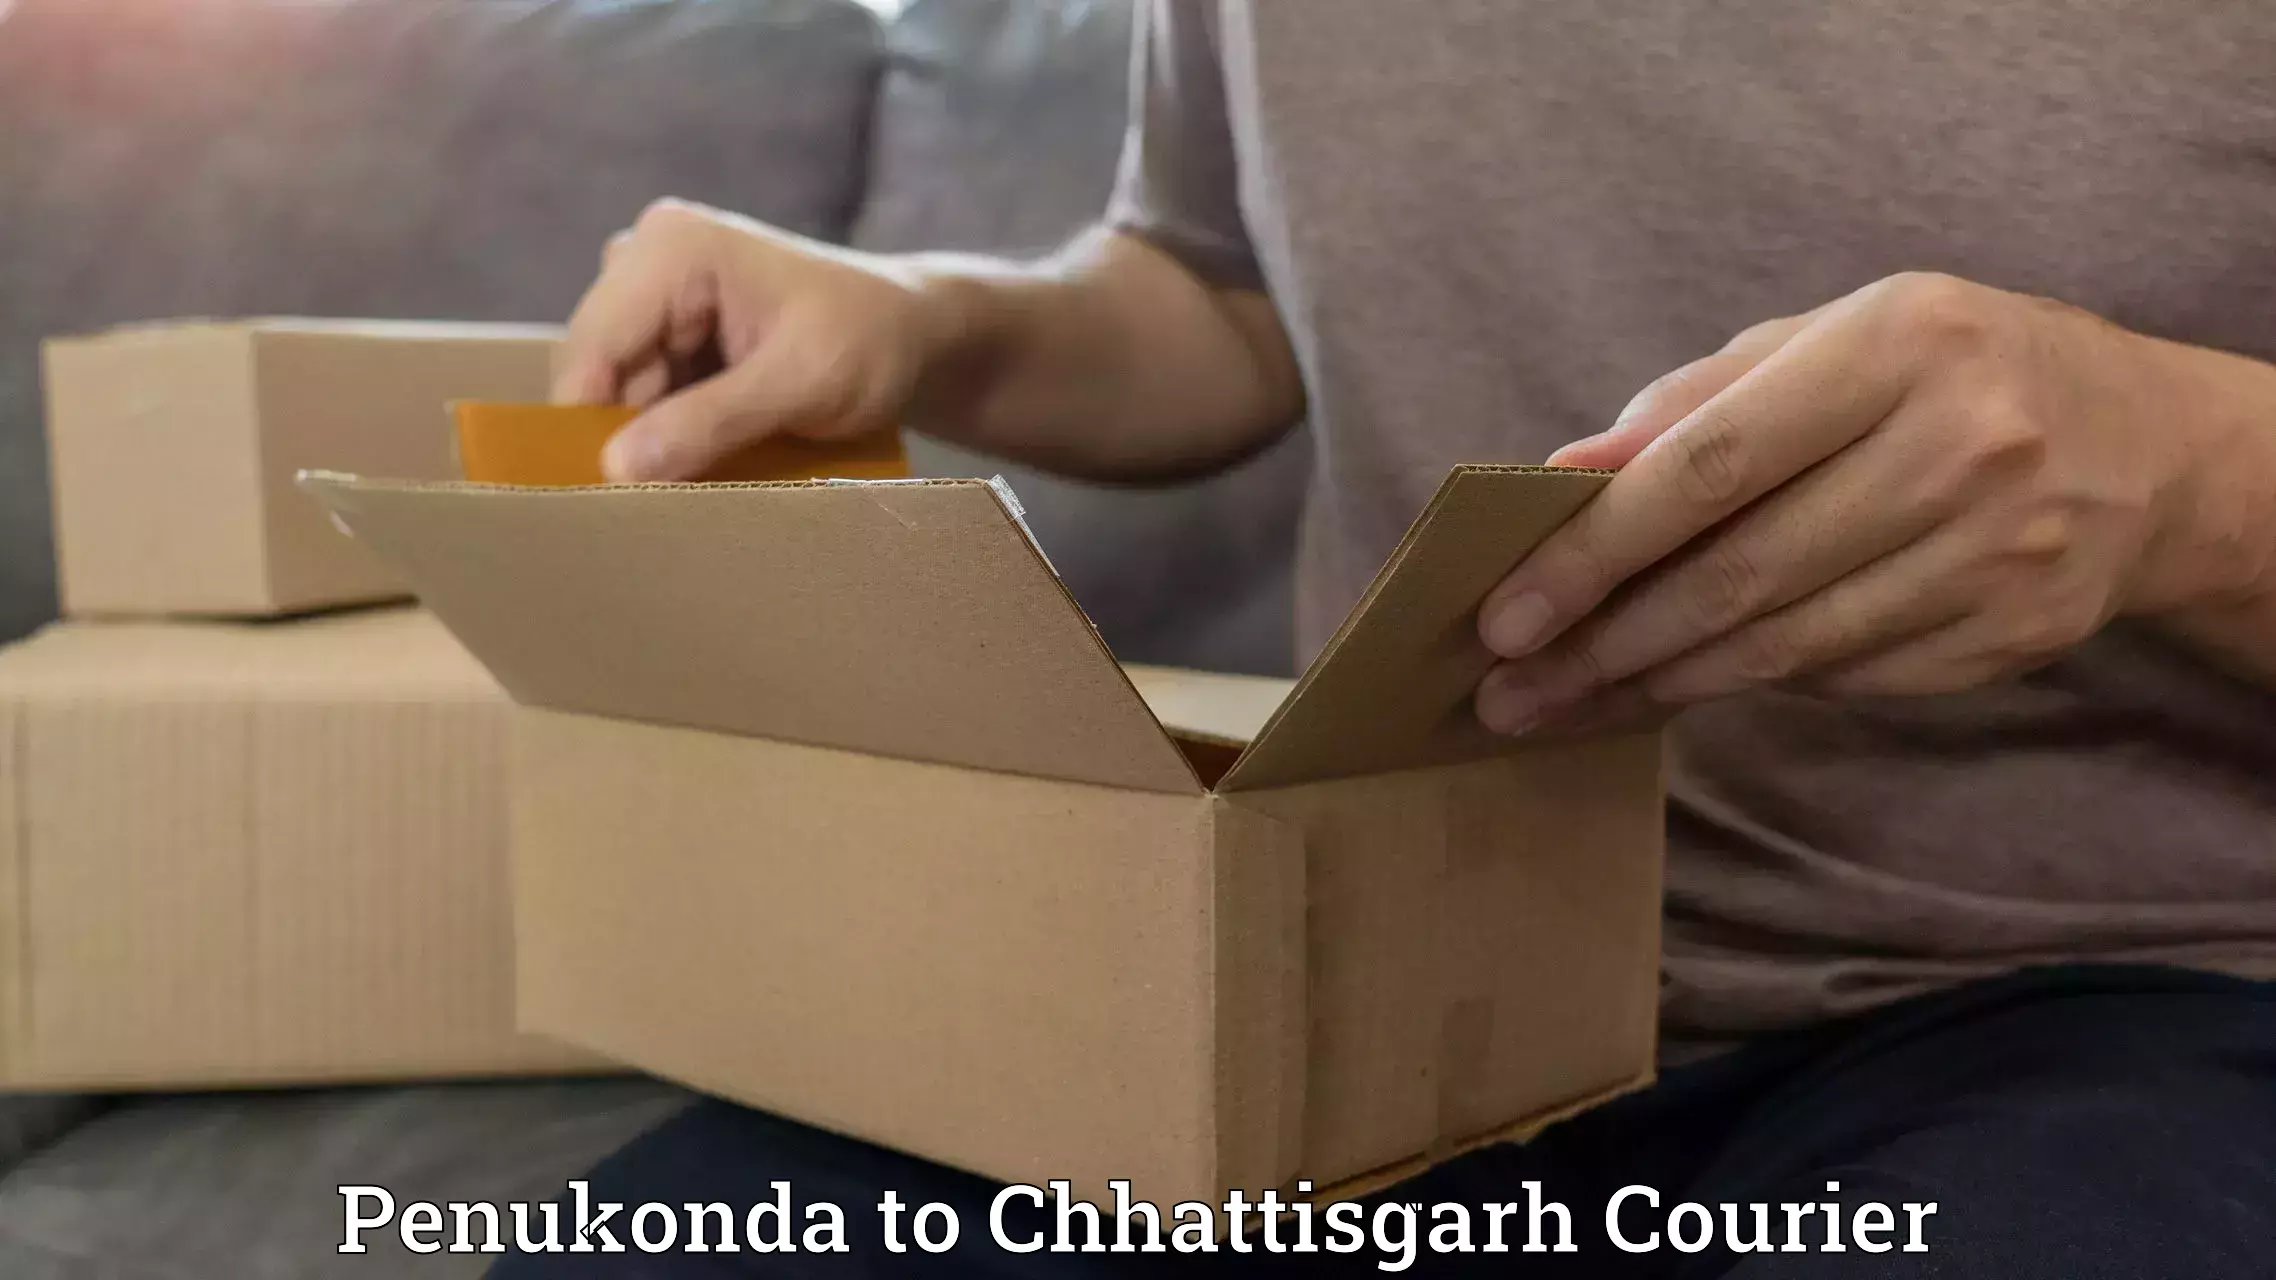 Reliable delivery network Penukonda to Chhattisgarh